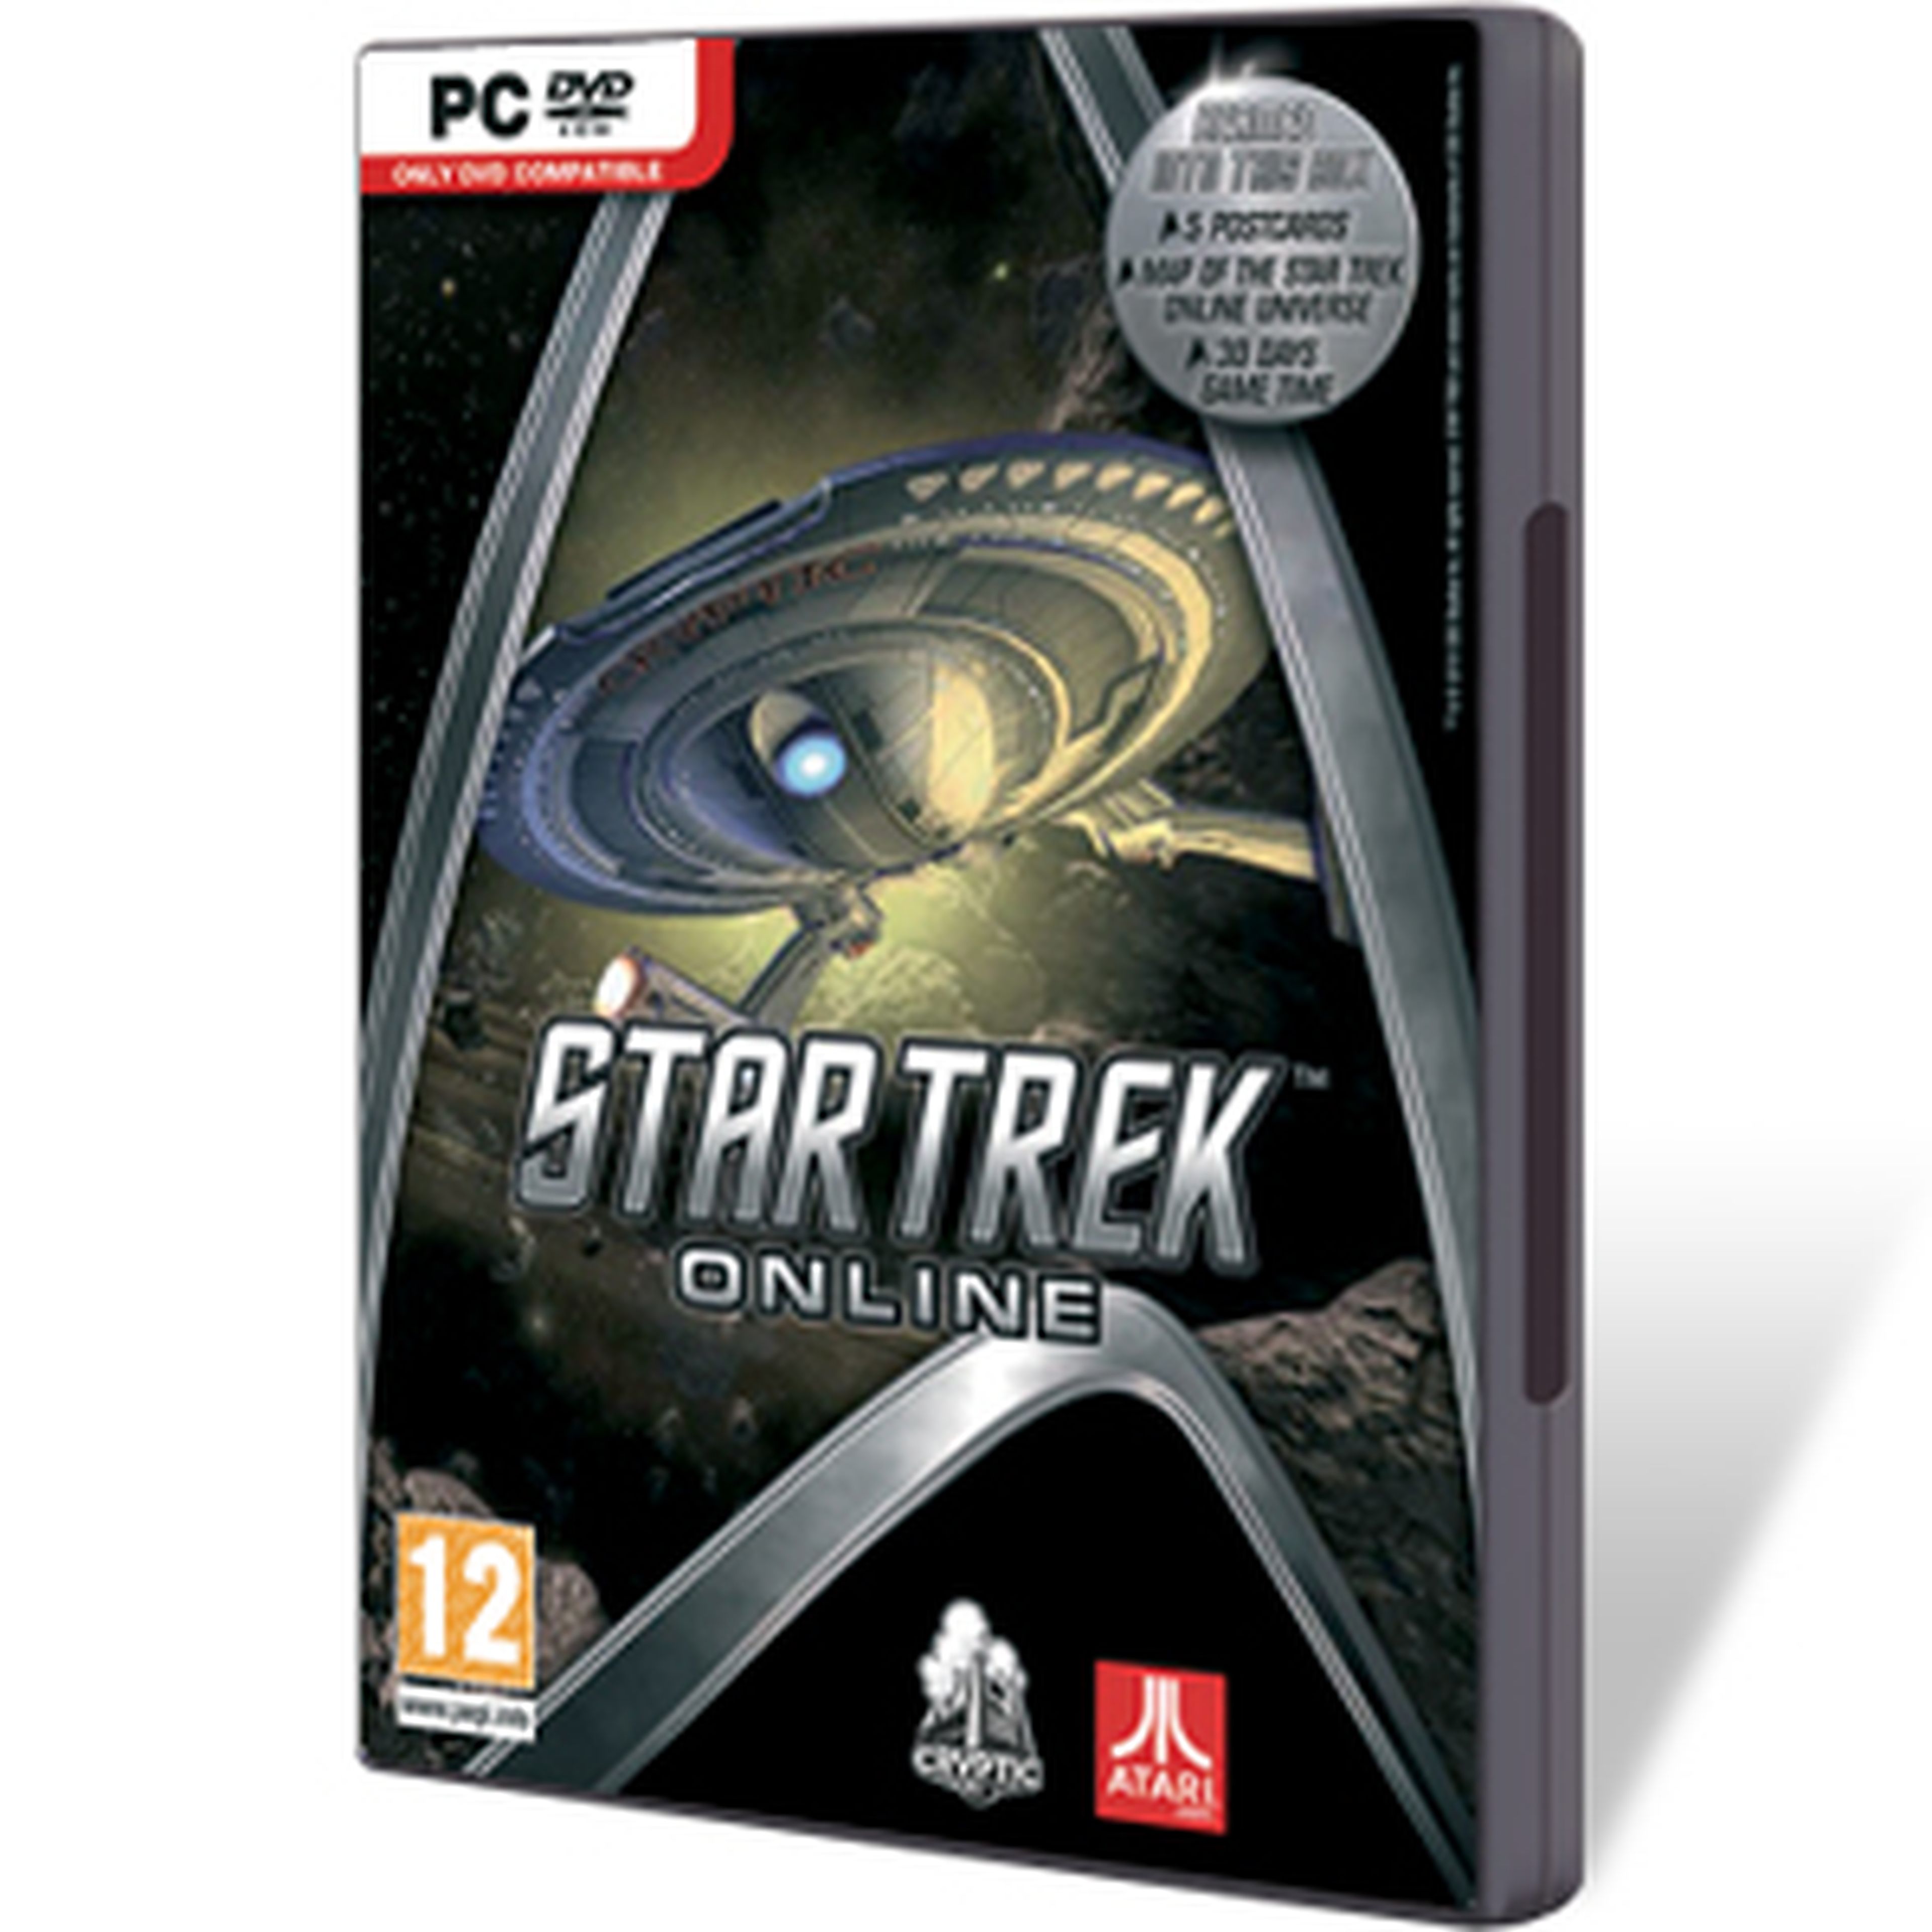 Star Trek Online para PC